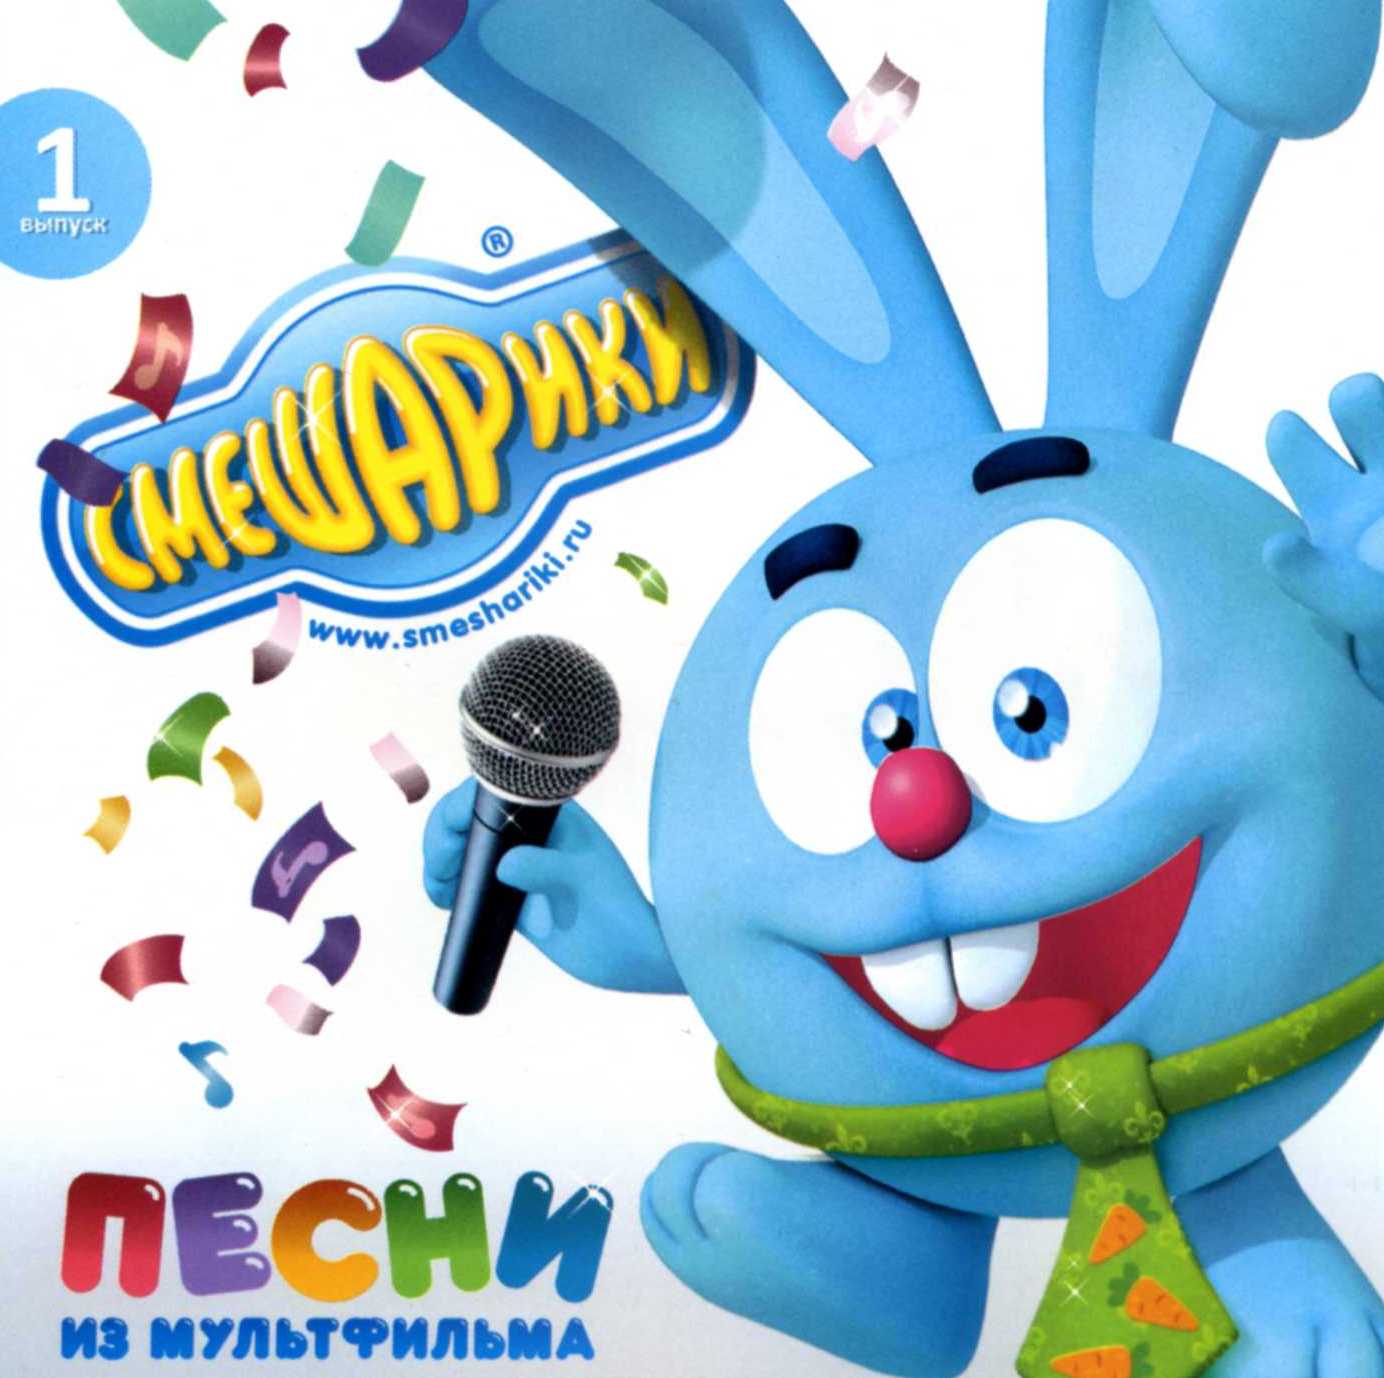 Русские детские песни скачать бесплатно mp3